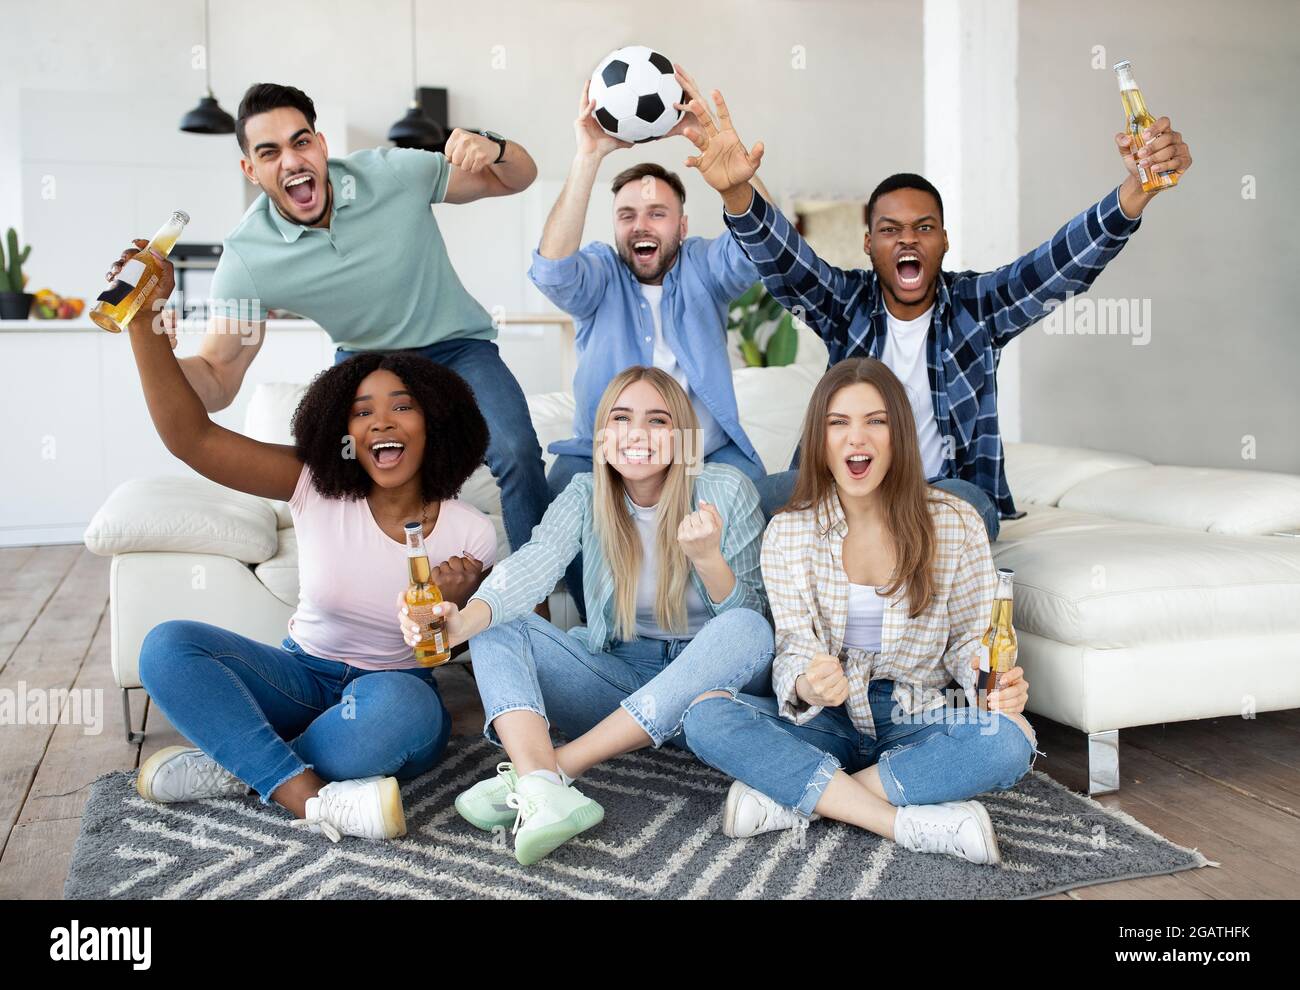 Begeisterte verschiedene Freunde, die Fußball gucken, Fußball halten, Tore  rufen, den Sieg feiern und für ihre Lieblingsmannschaft zu Hause jubeln.  Gruppe von Stockfotografie - Alamy